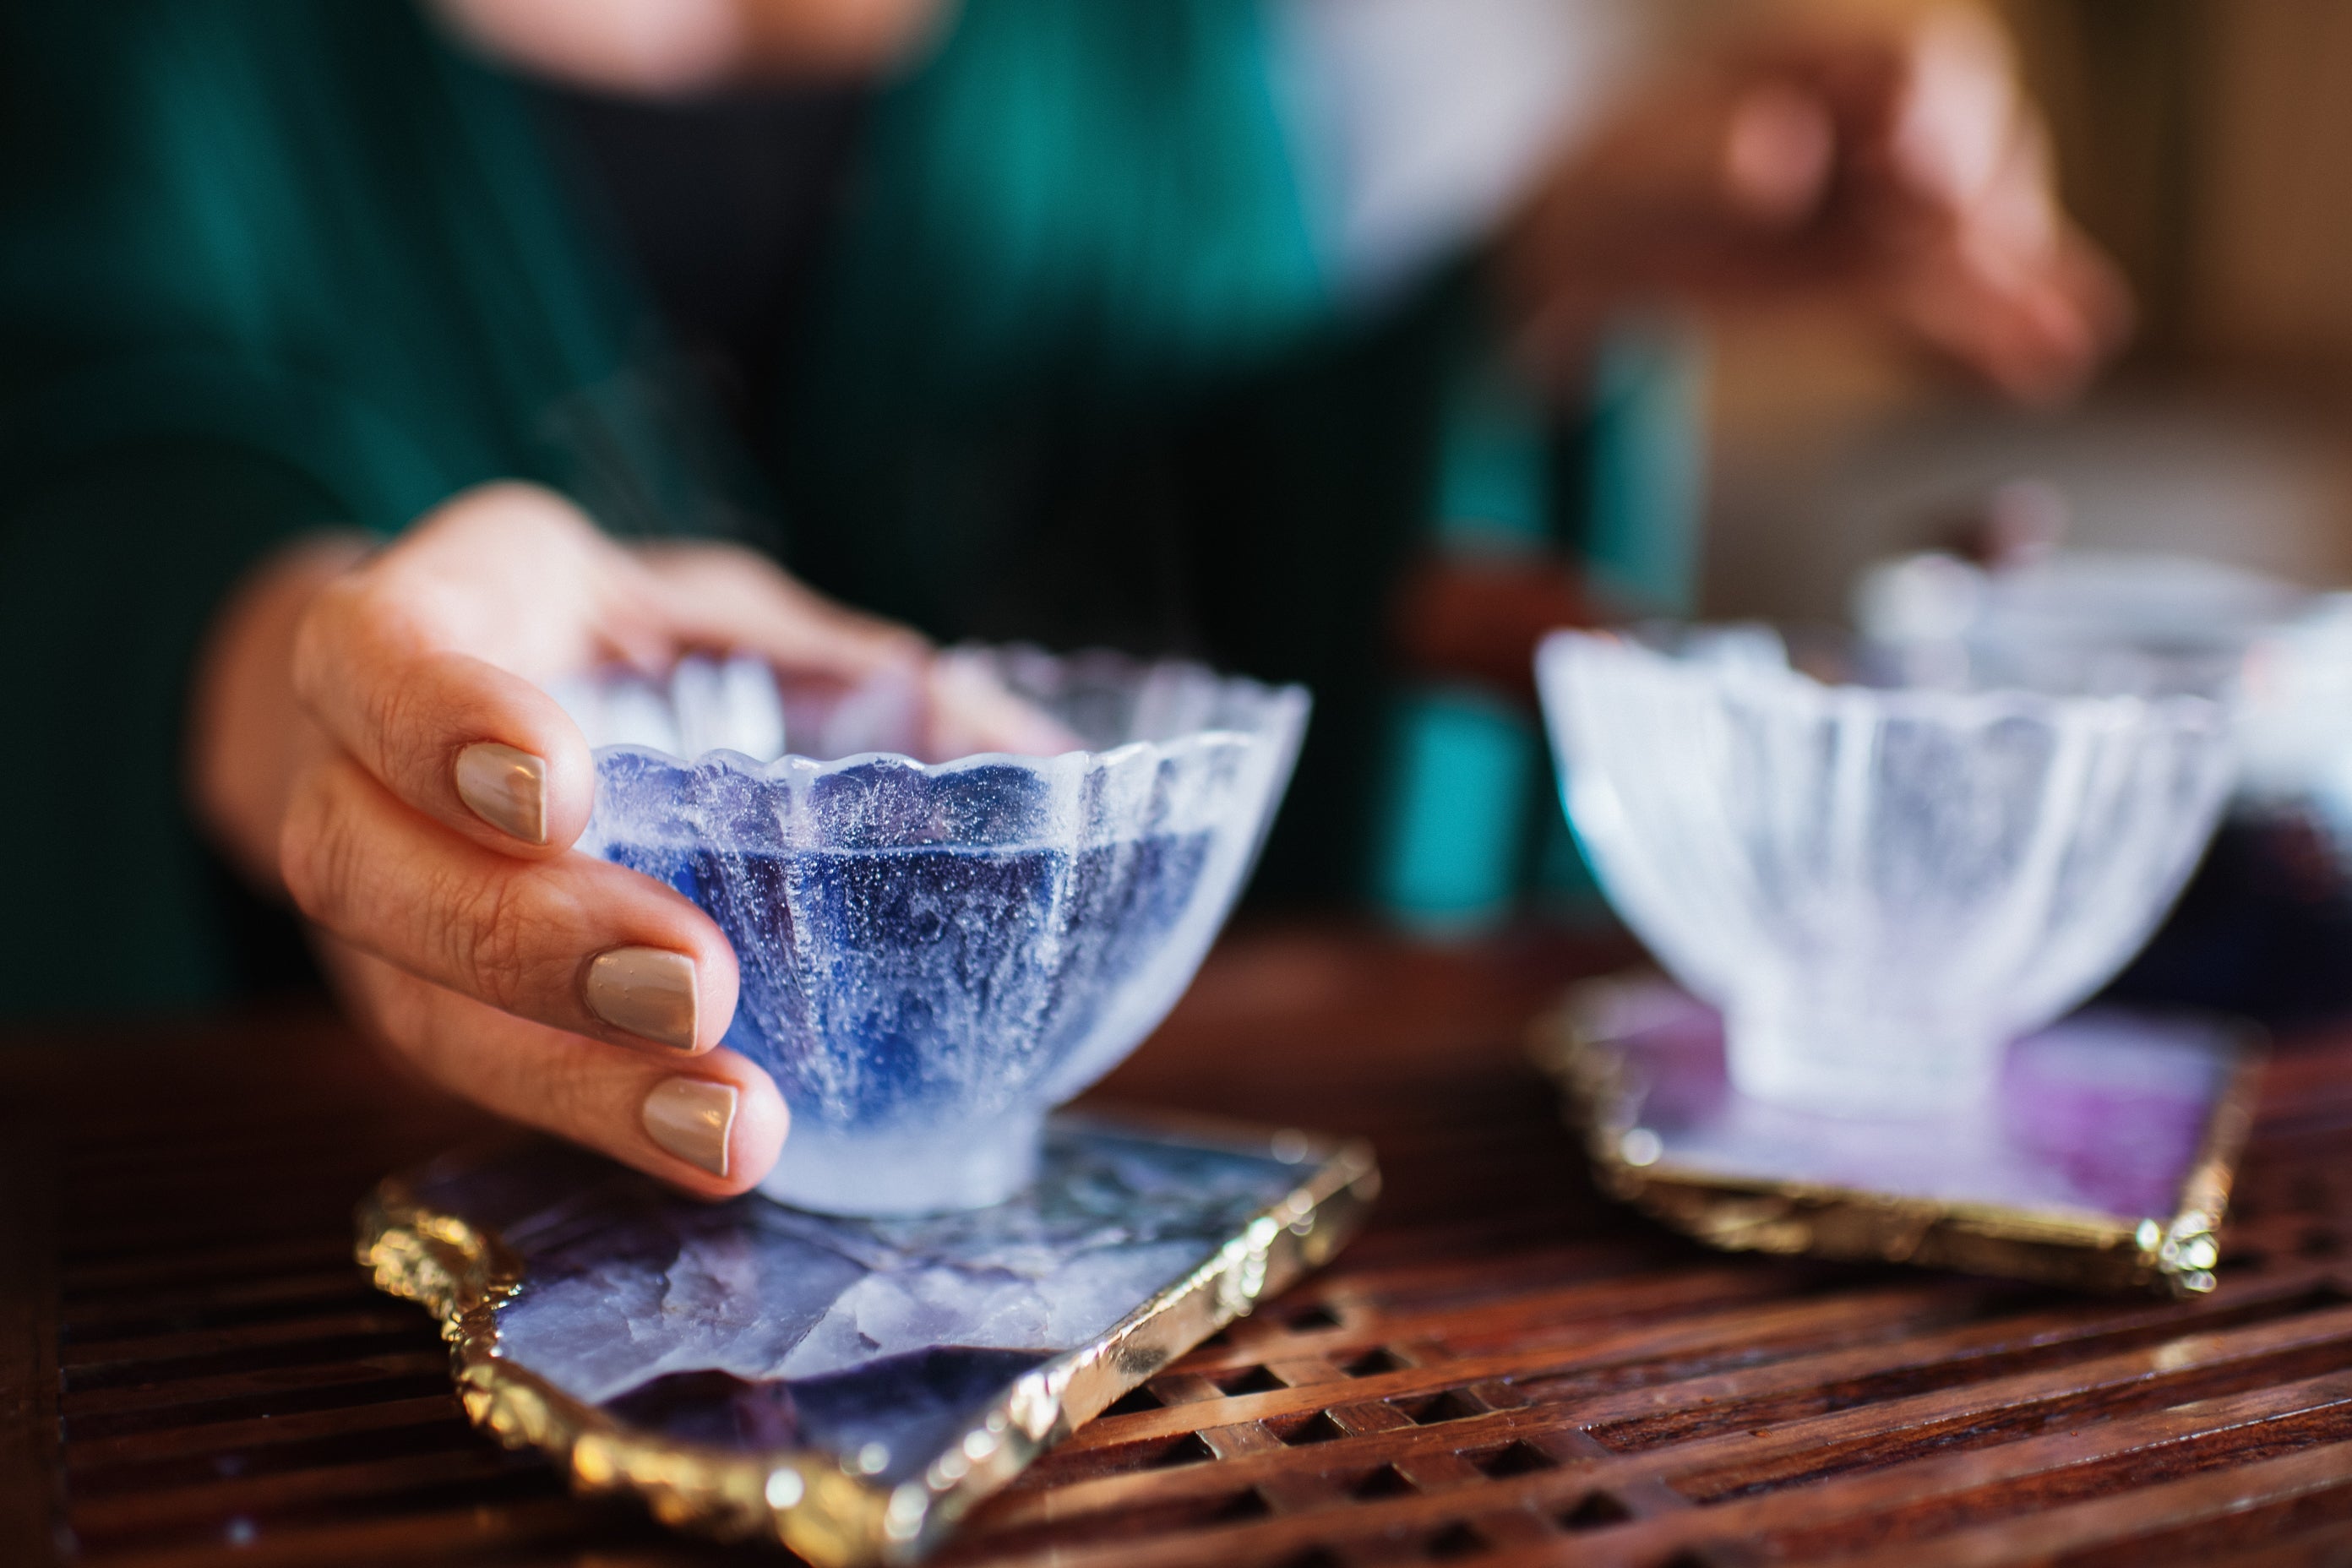 Creating Ceremonies of Connection Through Tea - Magic Hour